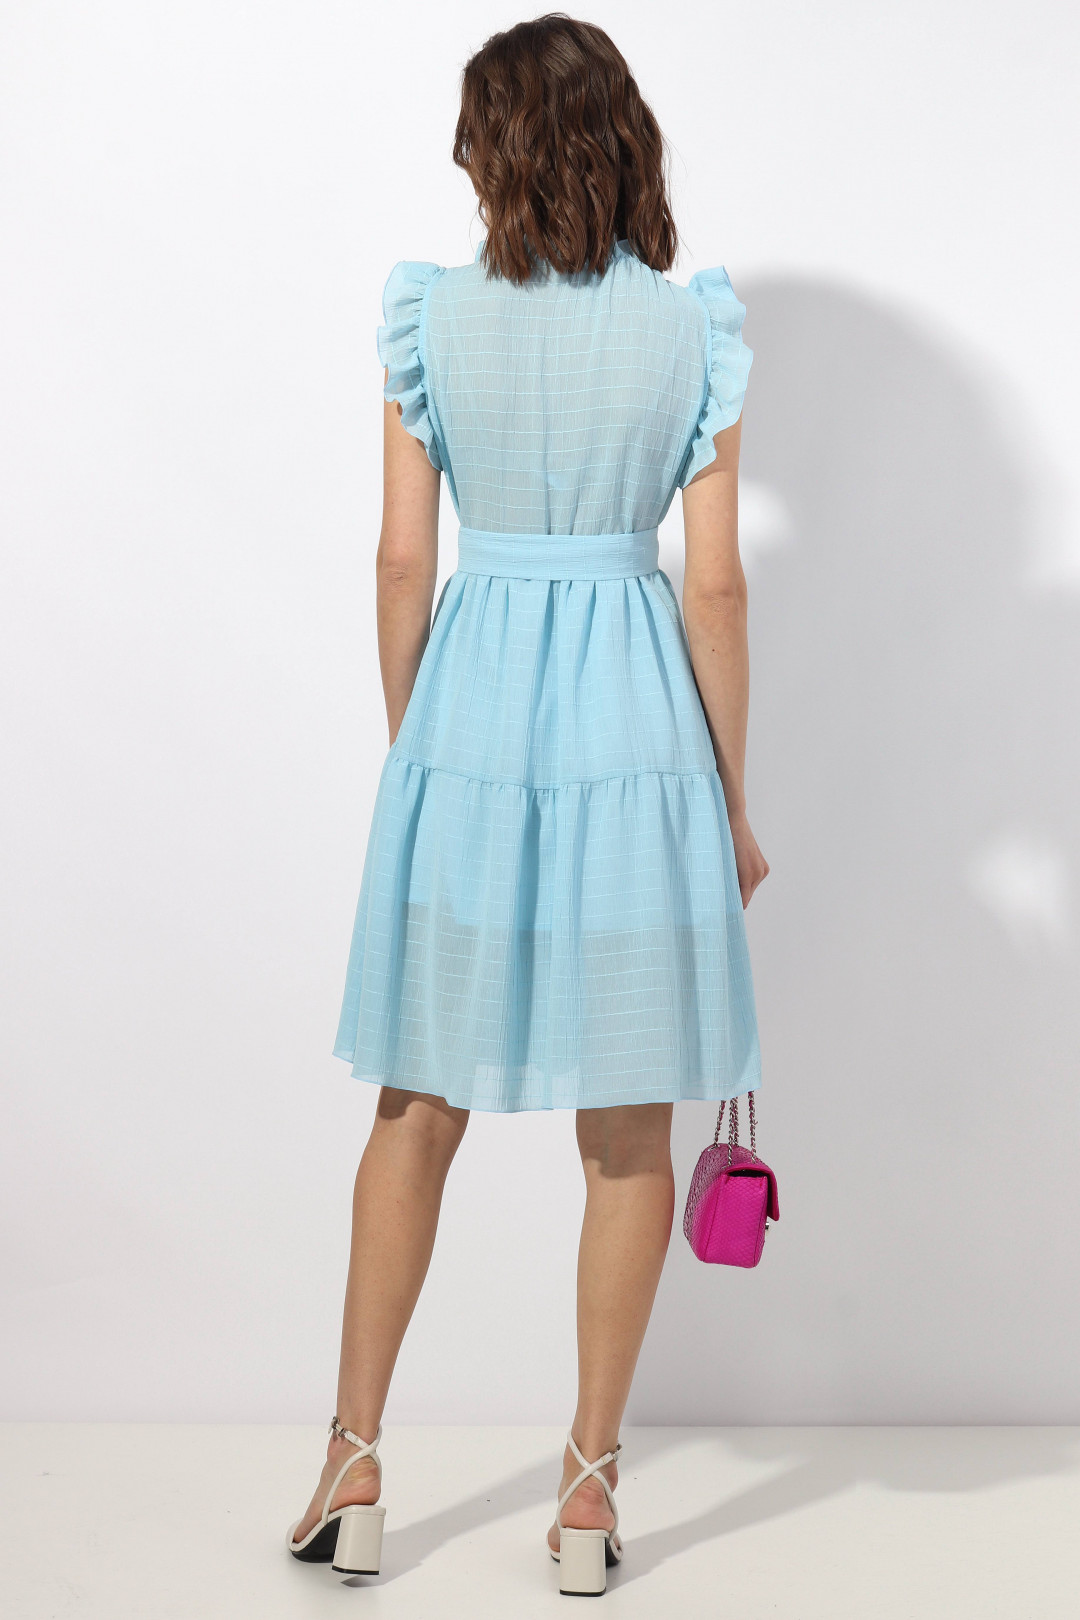 Платье МиА-Мода 1340 голубой